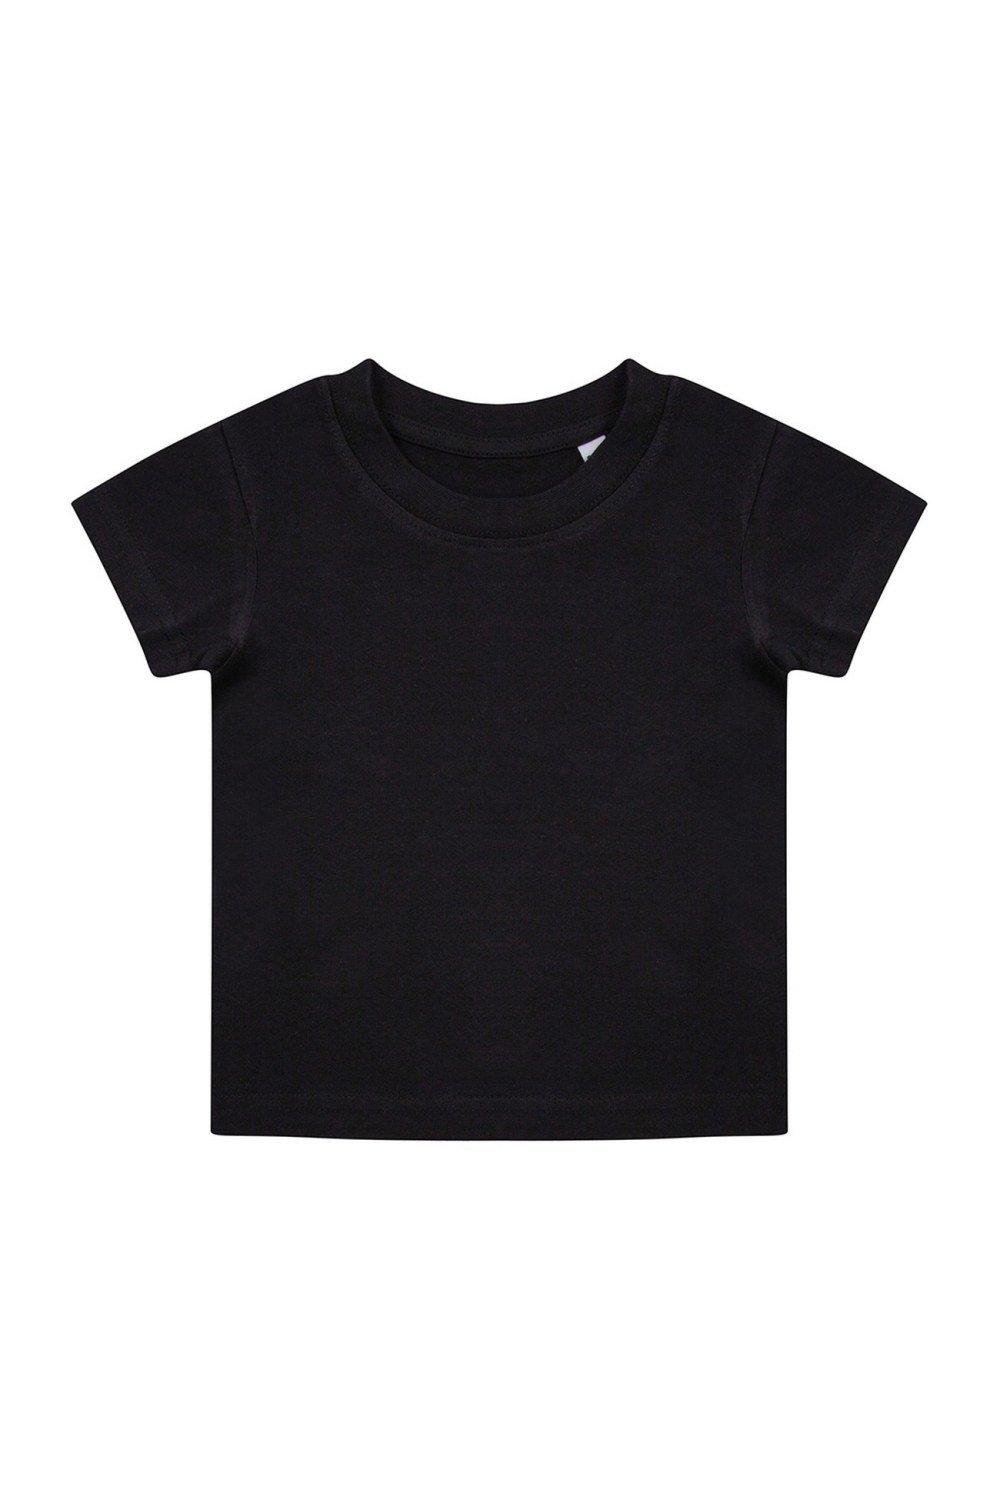 Органическая футболка Larkwood, черный костюм размер 6 мес